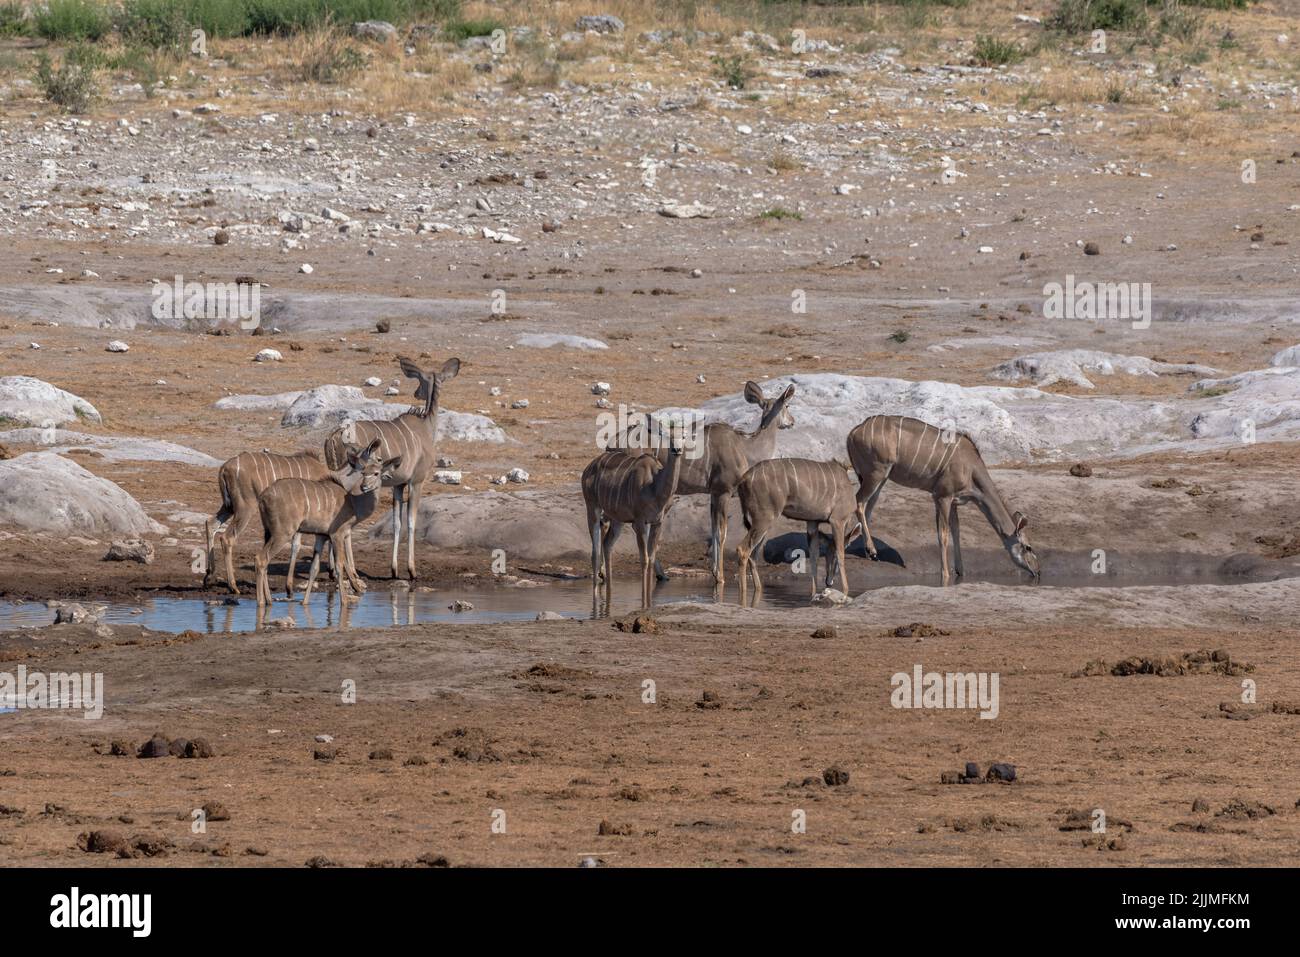 Large female kudu, Tragelaphus strepsiceros drinking at a waterhole in Khaudum National Park, Namibia Stock Photo